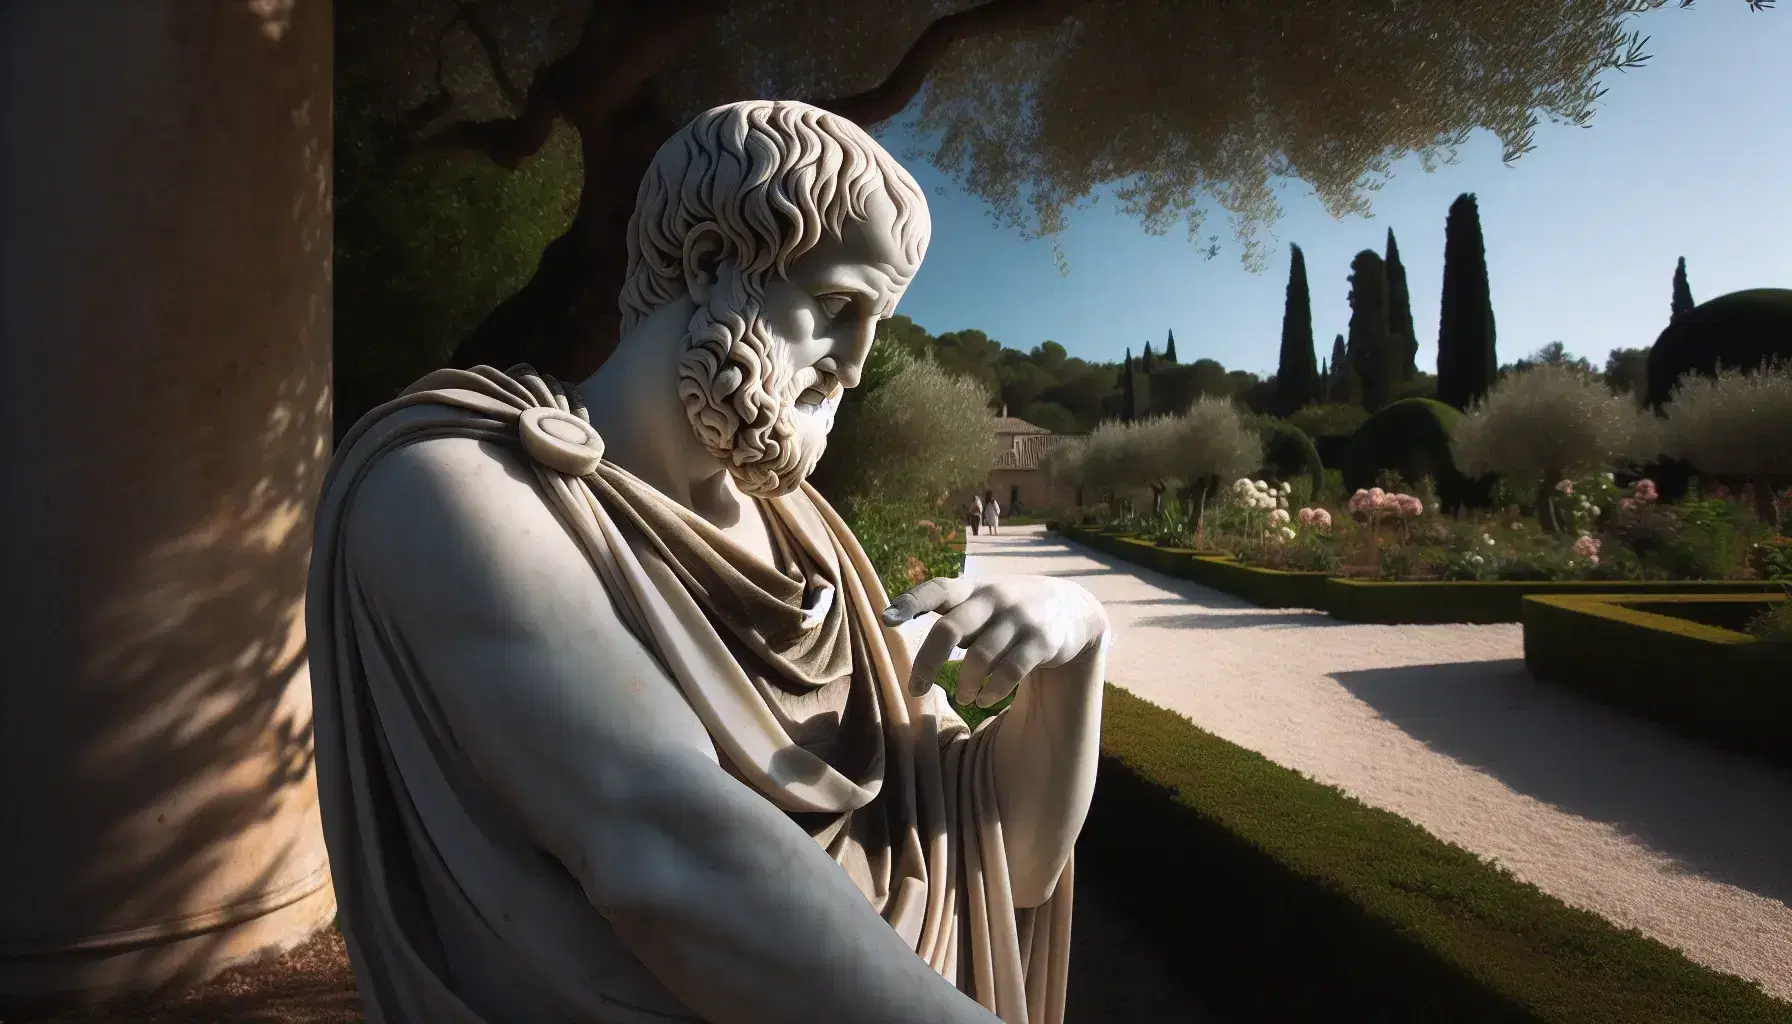 Estatua de mármol blanco de Aristóteles pensativo en un jardín clásico, con un sendero de grava y vegetación variada bajo un cielo azul despejado.